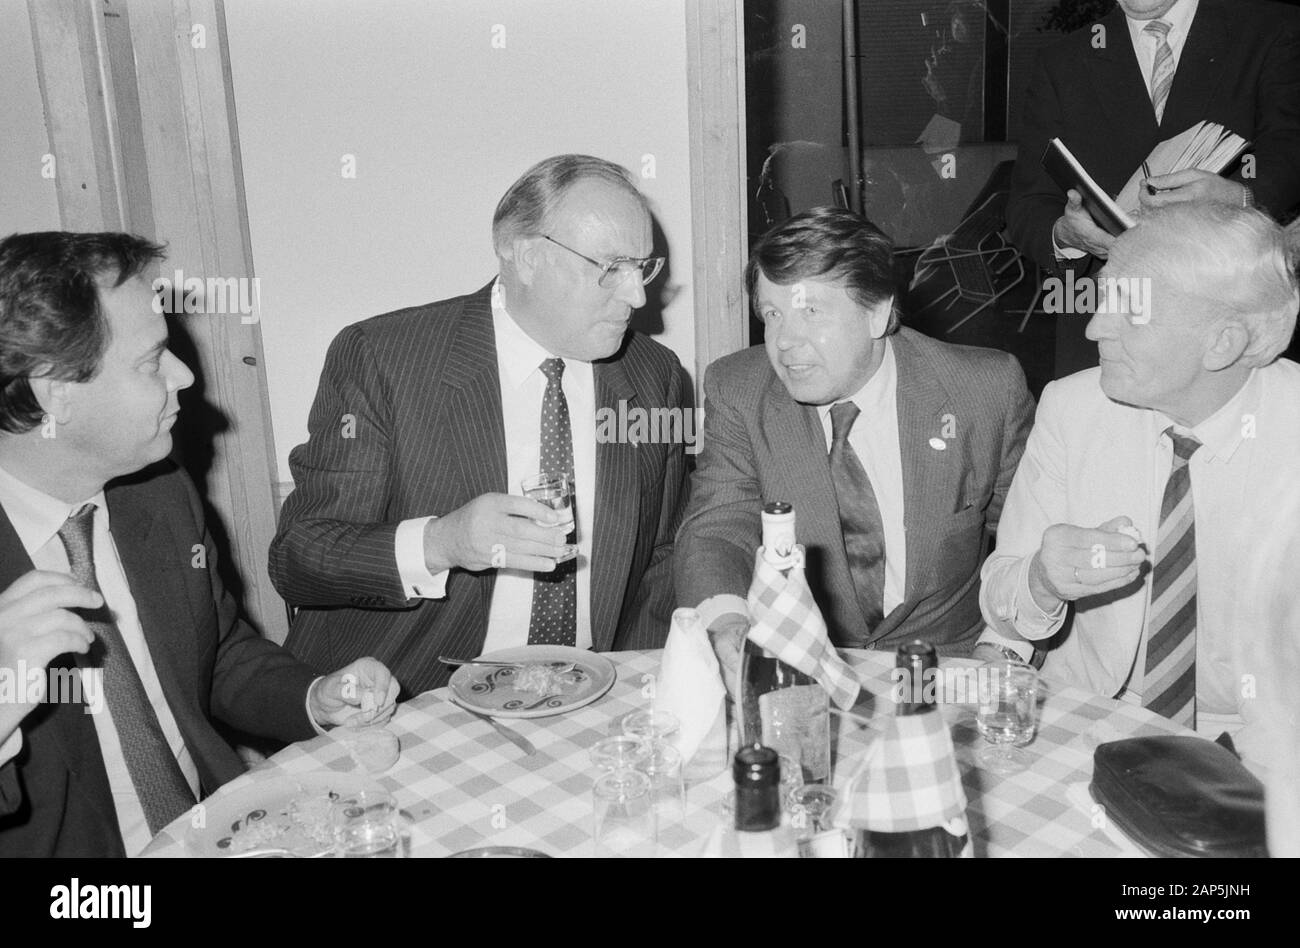 Helmut Kohl, deutscher Bundeskanzler (Mitte), bein 1963 Essen in Hamburg, Deutschland um 1984. Bundeskanzler Helmut Kohl (Mitte), nach Abendessen in Hamburg, Deutschland, um 1984. Stockfoto